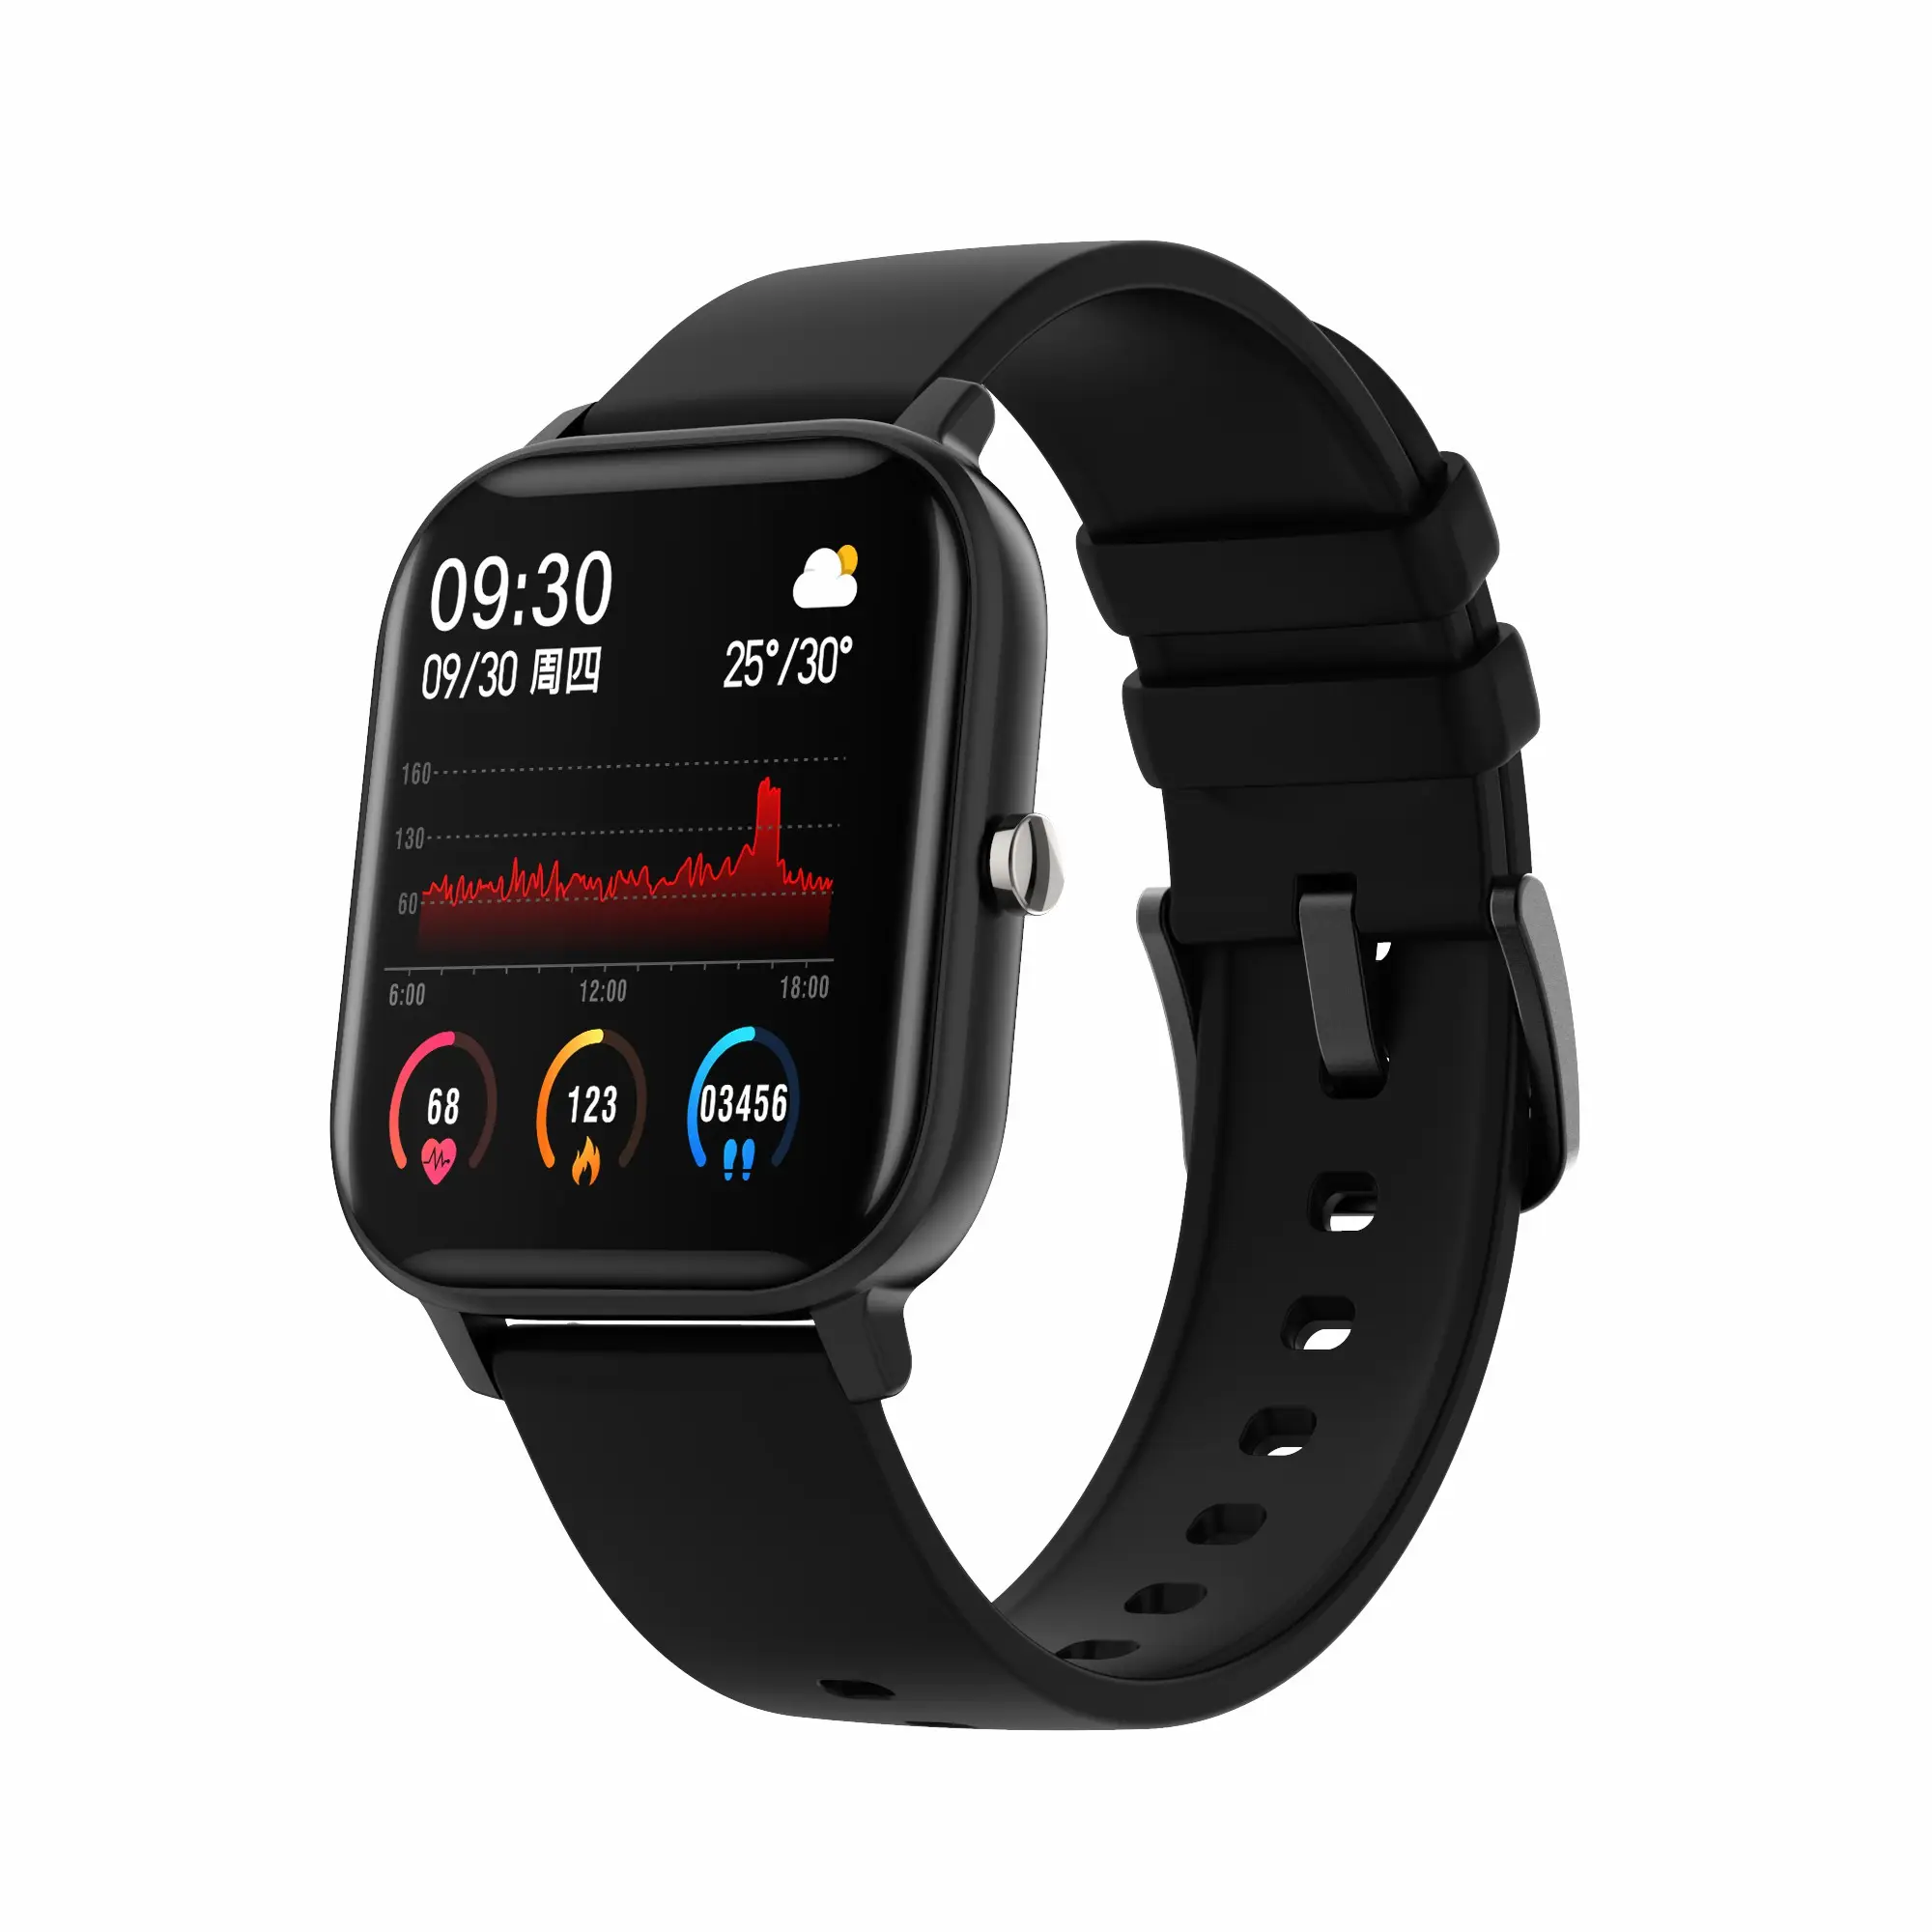 Bester Preis P8 Smartwatch 1,4 Zoll Voll-Touchscreen IP67 Wasserdichter Fitness Tracker Sleep Tracker P8 Smart Watch